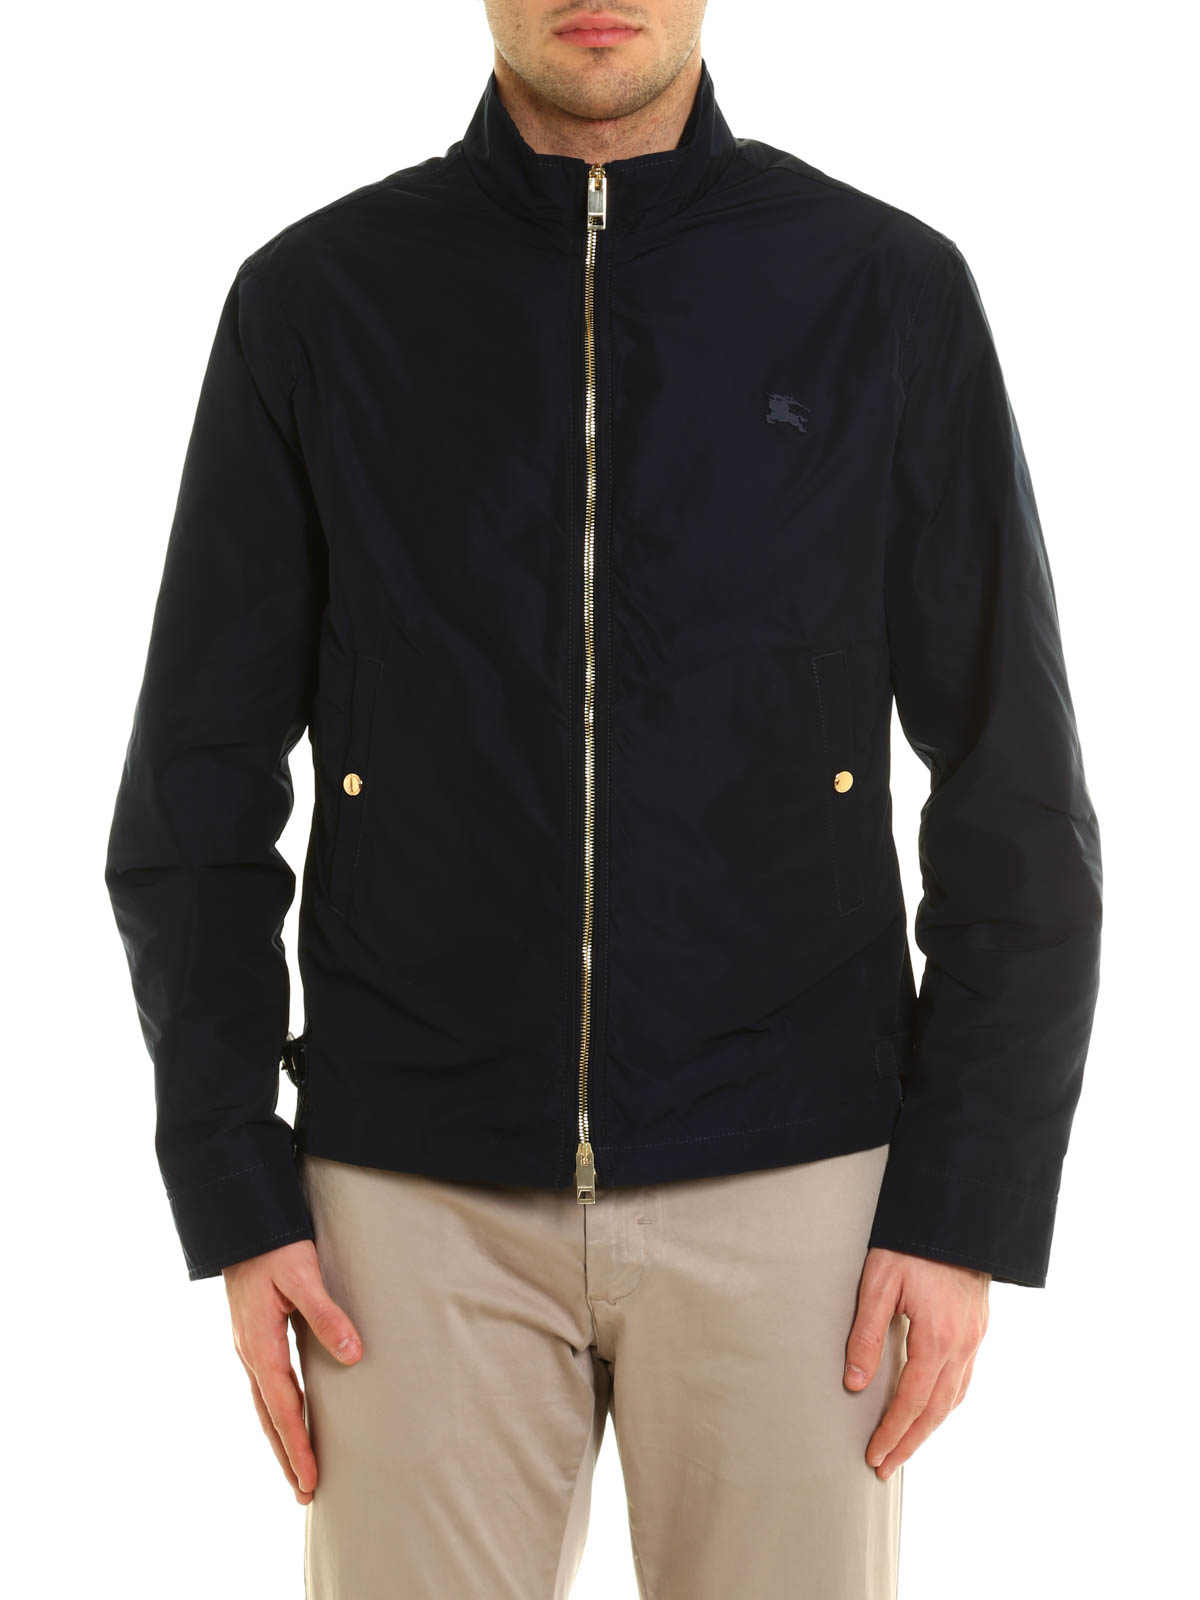 burberry jacket online